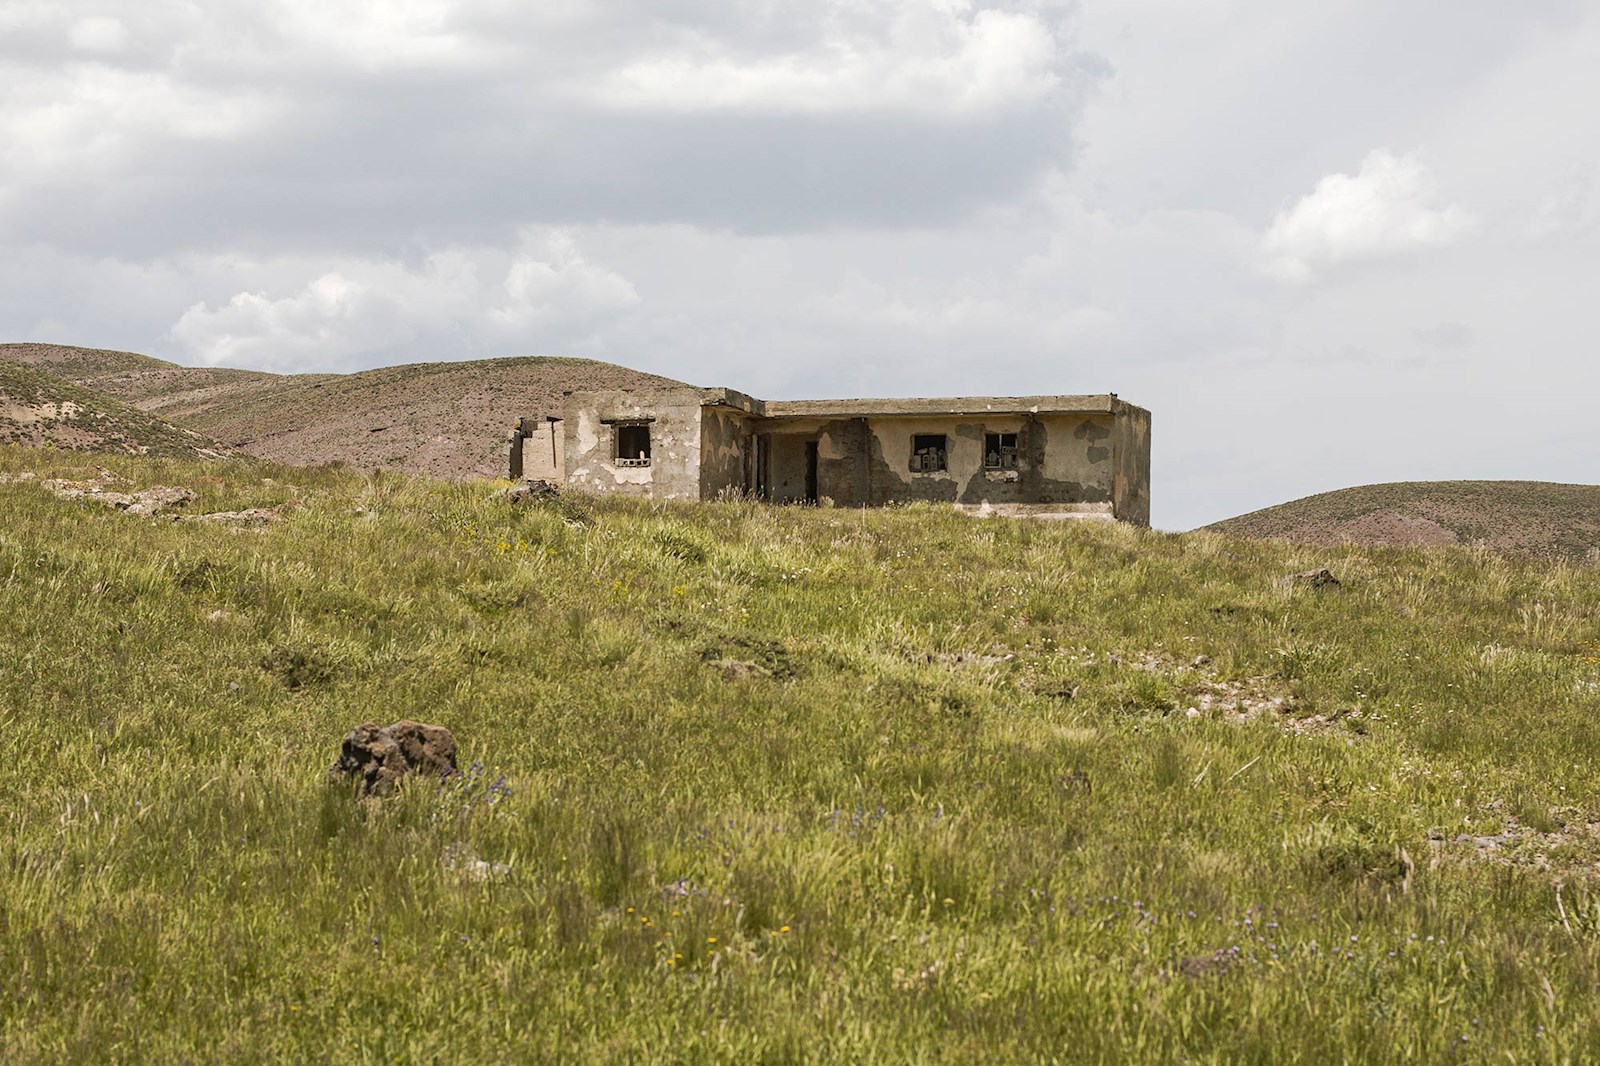 پاسگاه مرزی متروک در نزدیکی یکی از روستاهای مرزی خالی از سکنه شهرستان چالدران.